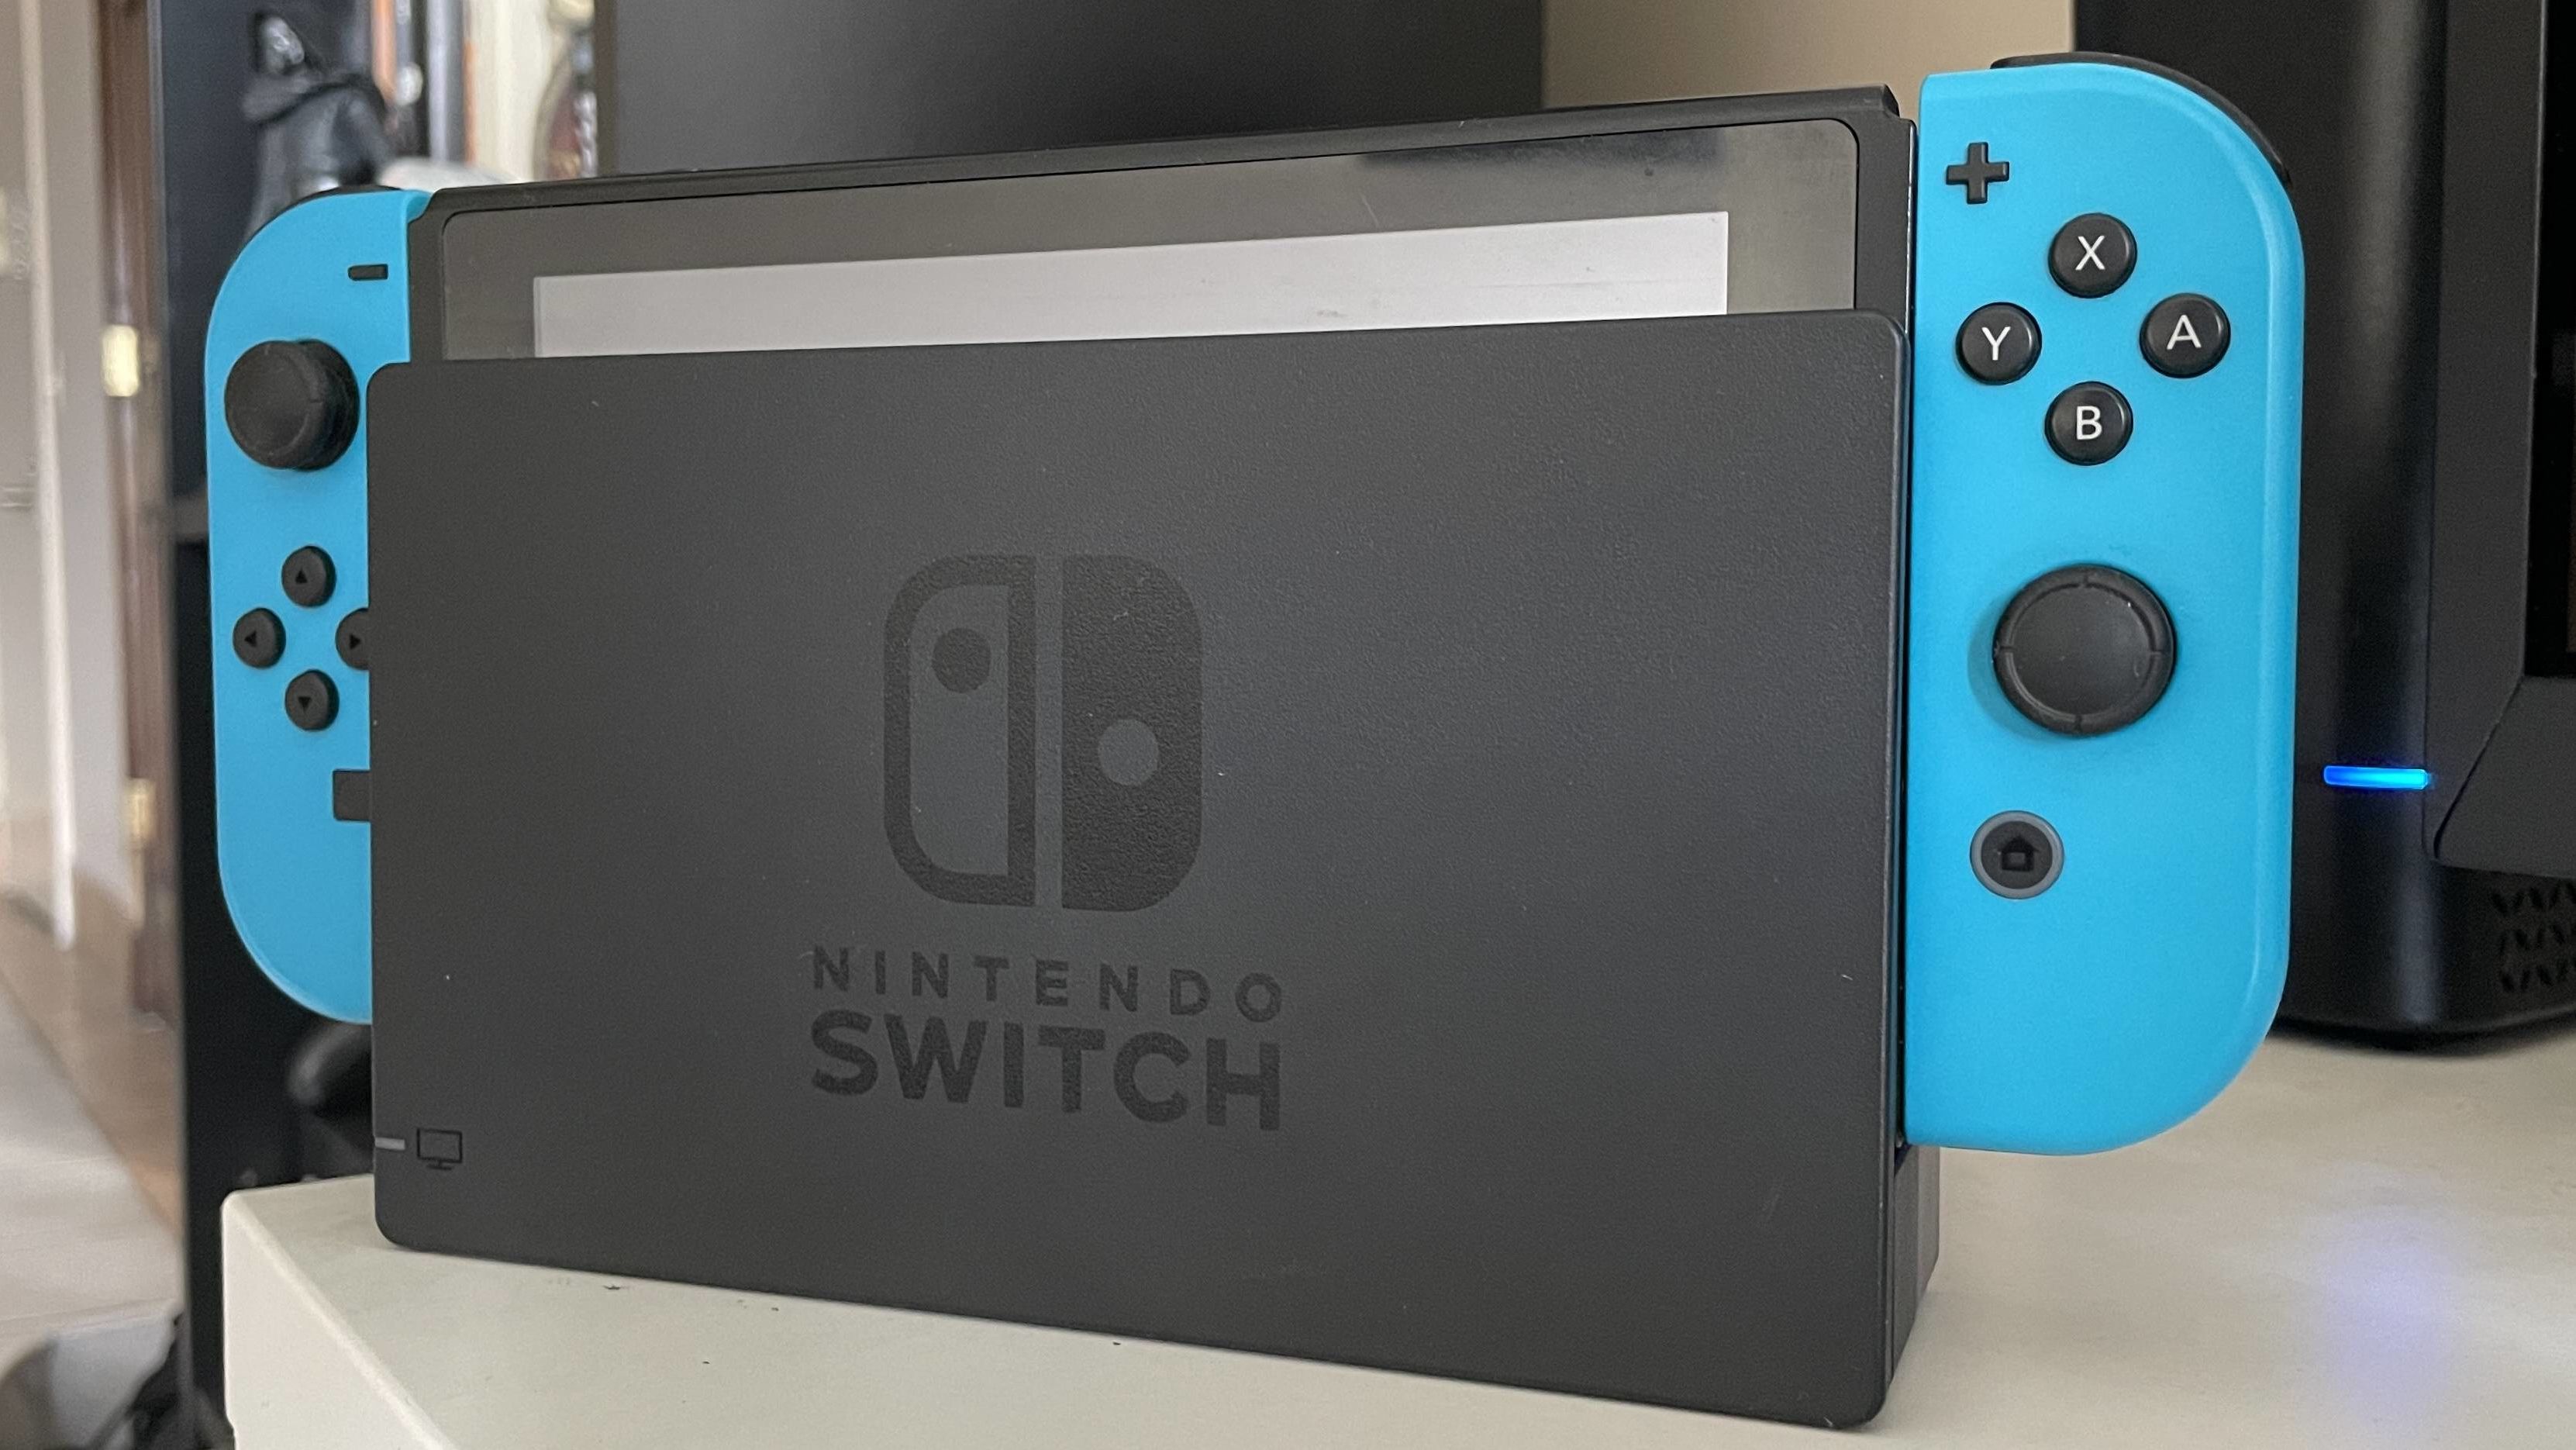 How the new Nintendo Switch V2 compares to the original model